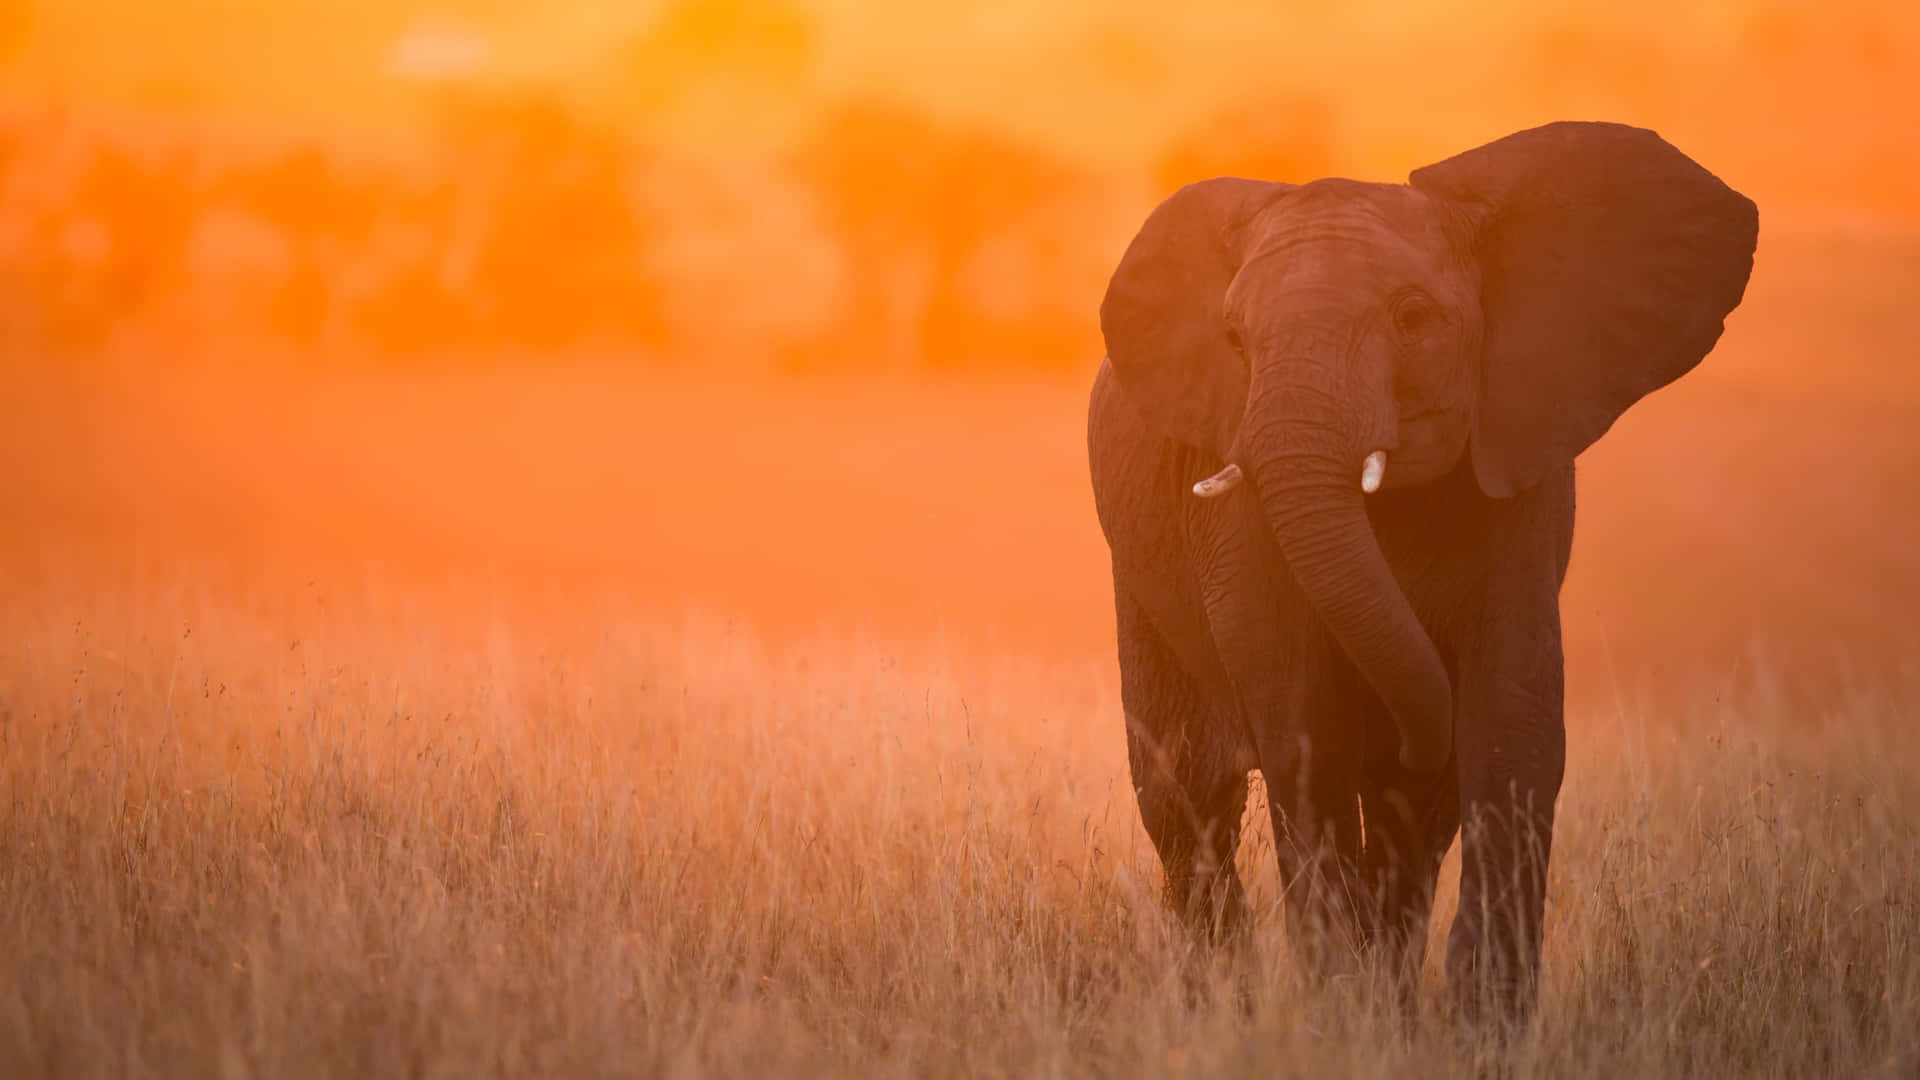 An Elephant Walking Through A Field At Sunset Wallpaper